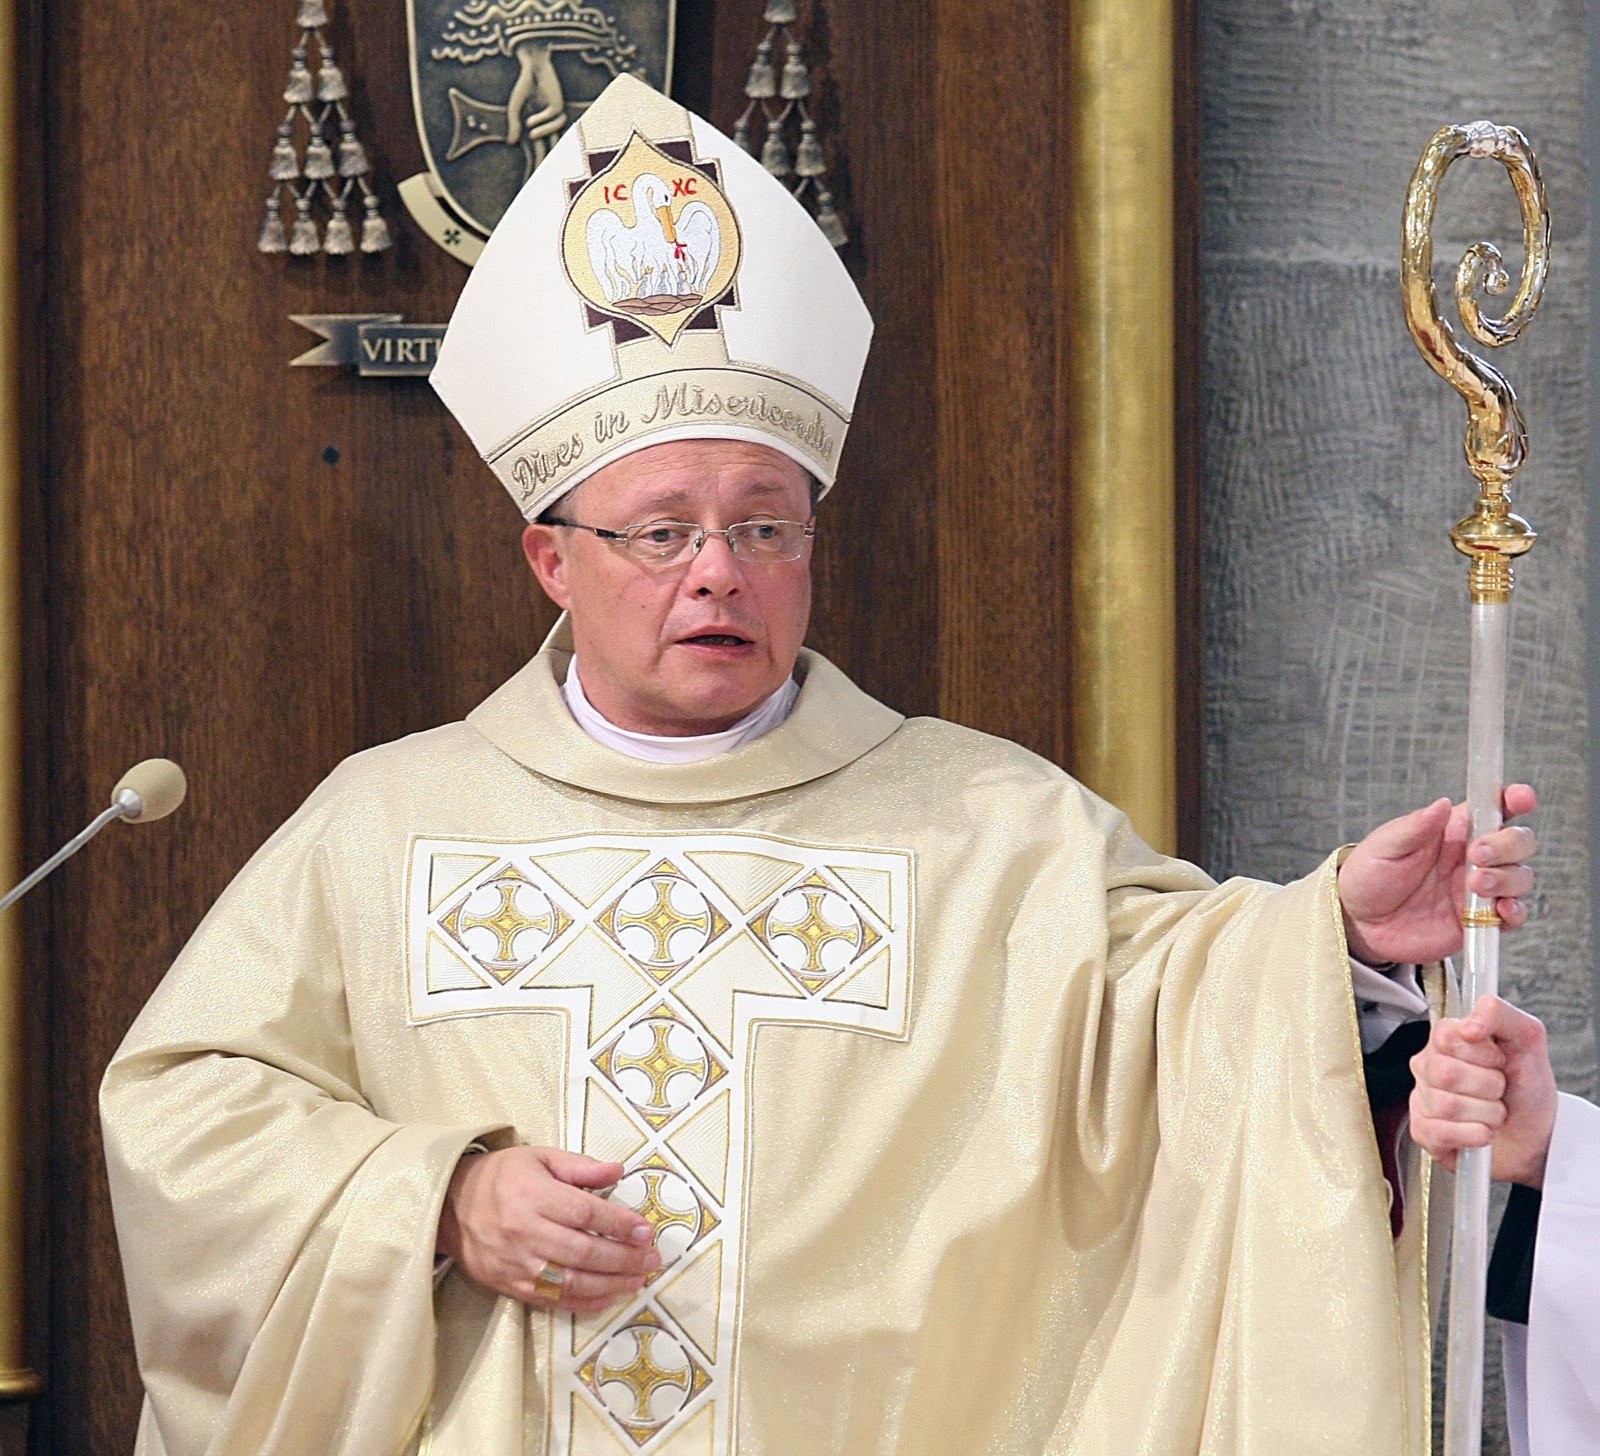 biskup-ignacy-dec-przed-s-dem-pozwali-go-parafianie-gazeta-wroc-awska